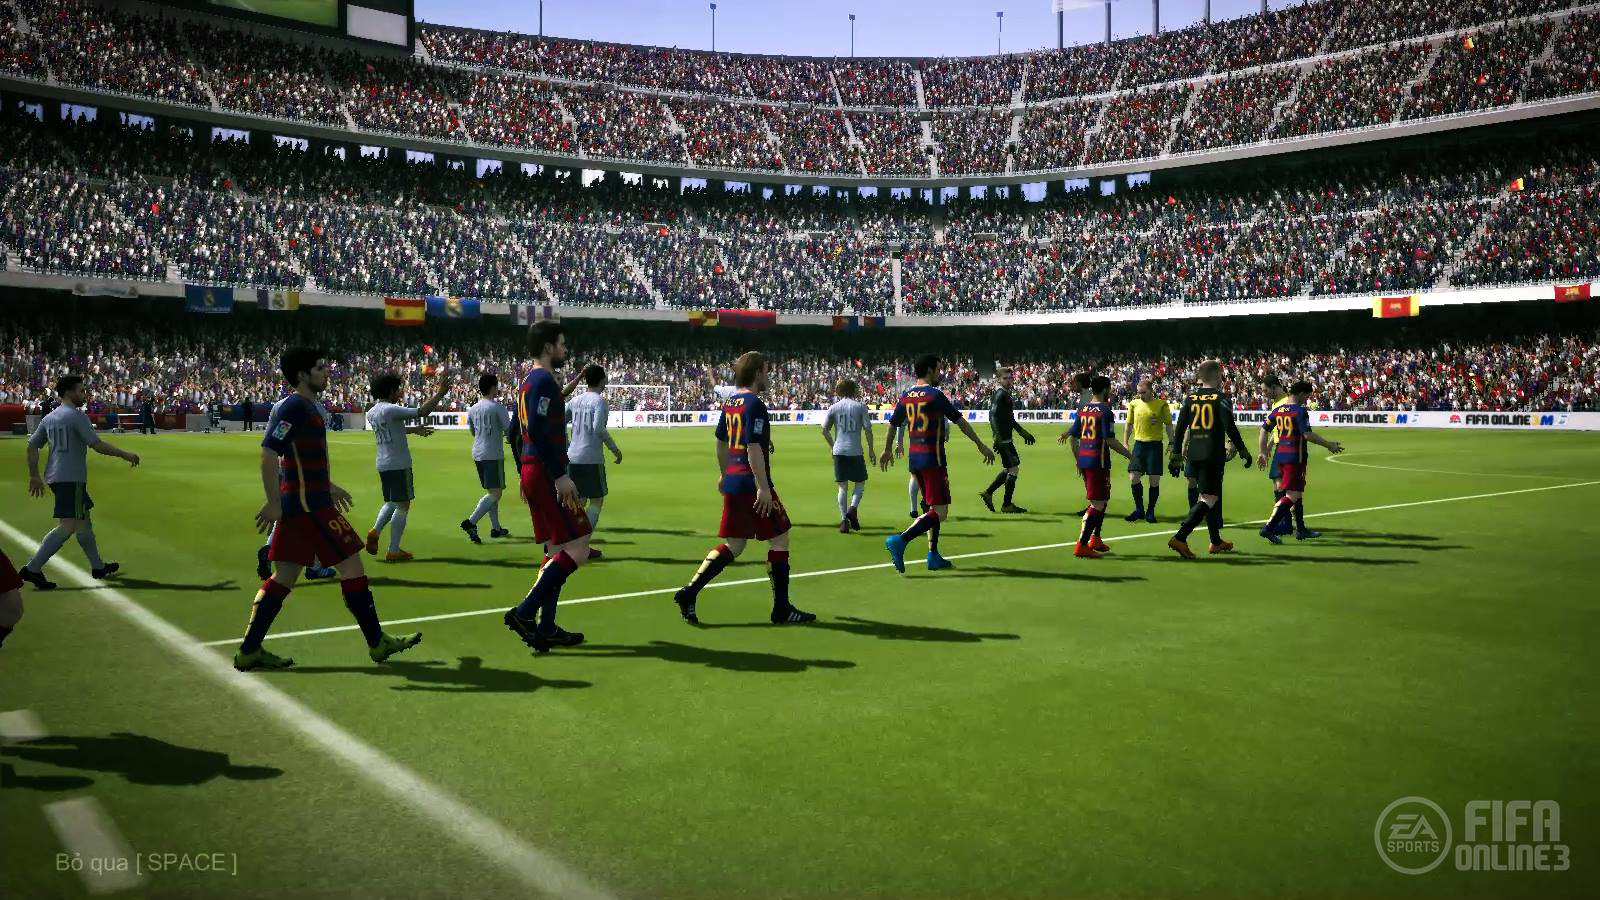 FIFA Online 3: Hàn Quốc một lần nữa cập nhật Engine, sức mạnh sẽ lên ngôi?